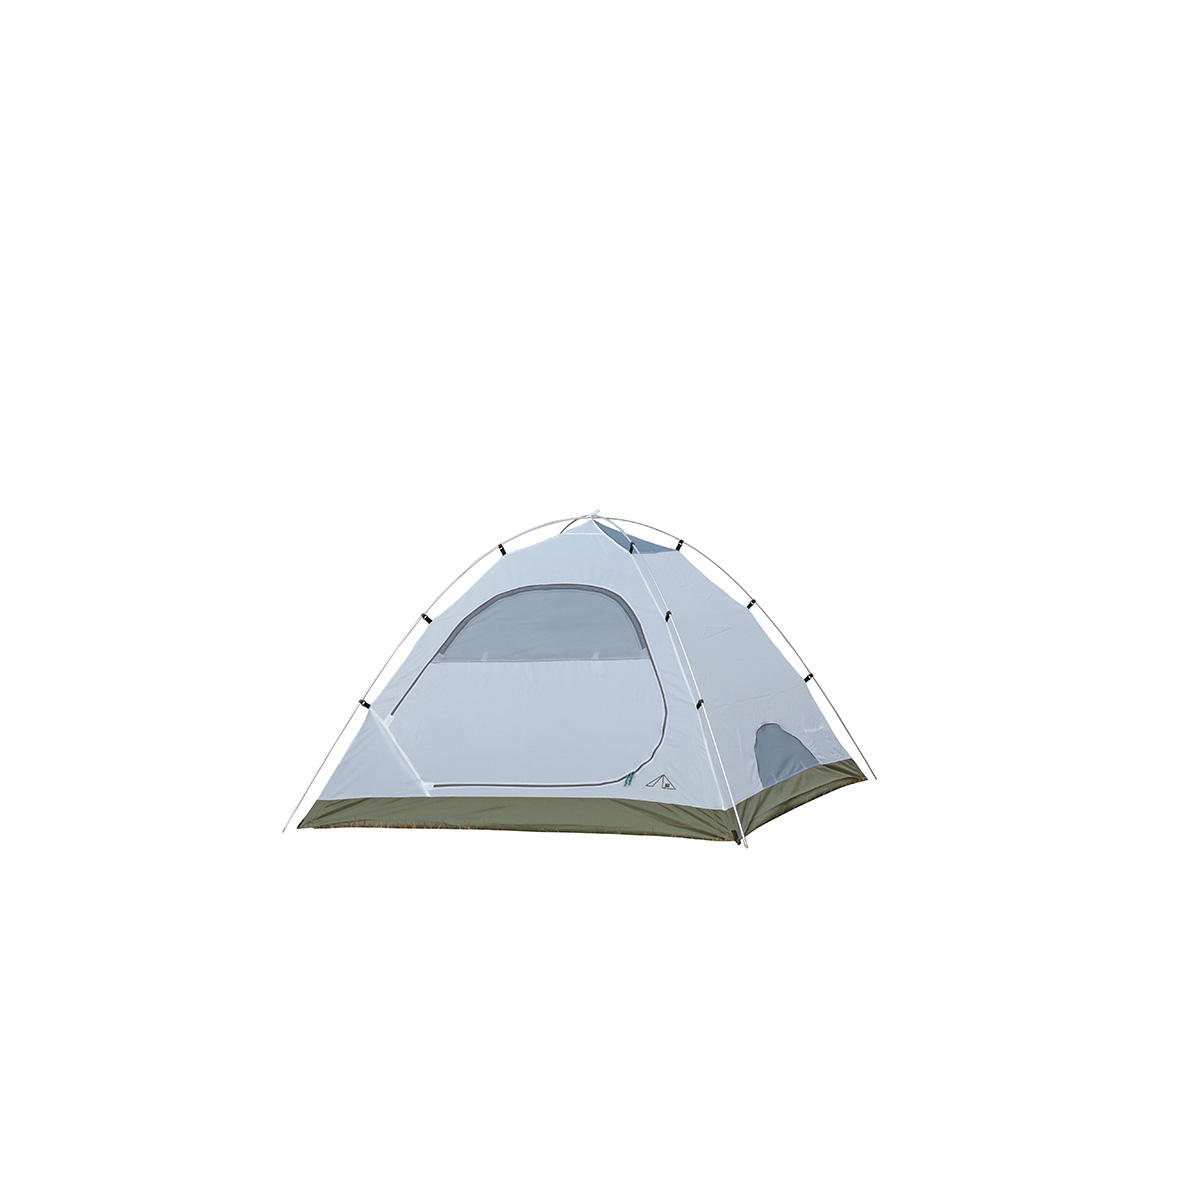 キャンプアウト アルミドームテント3UV（オールドイエロー） - アウトドア・キャンプ用品 - キャプテンスタッグ